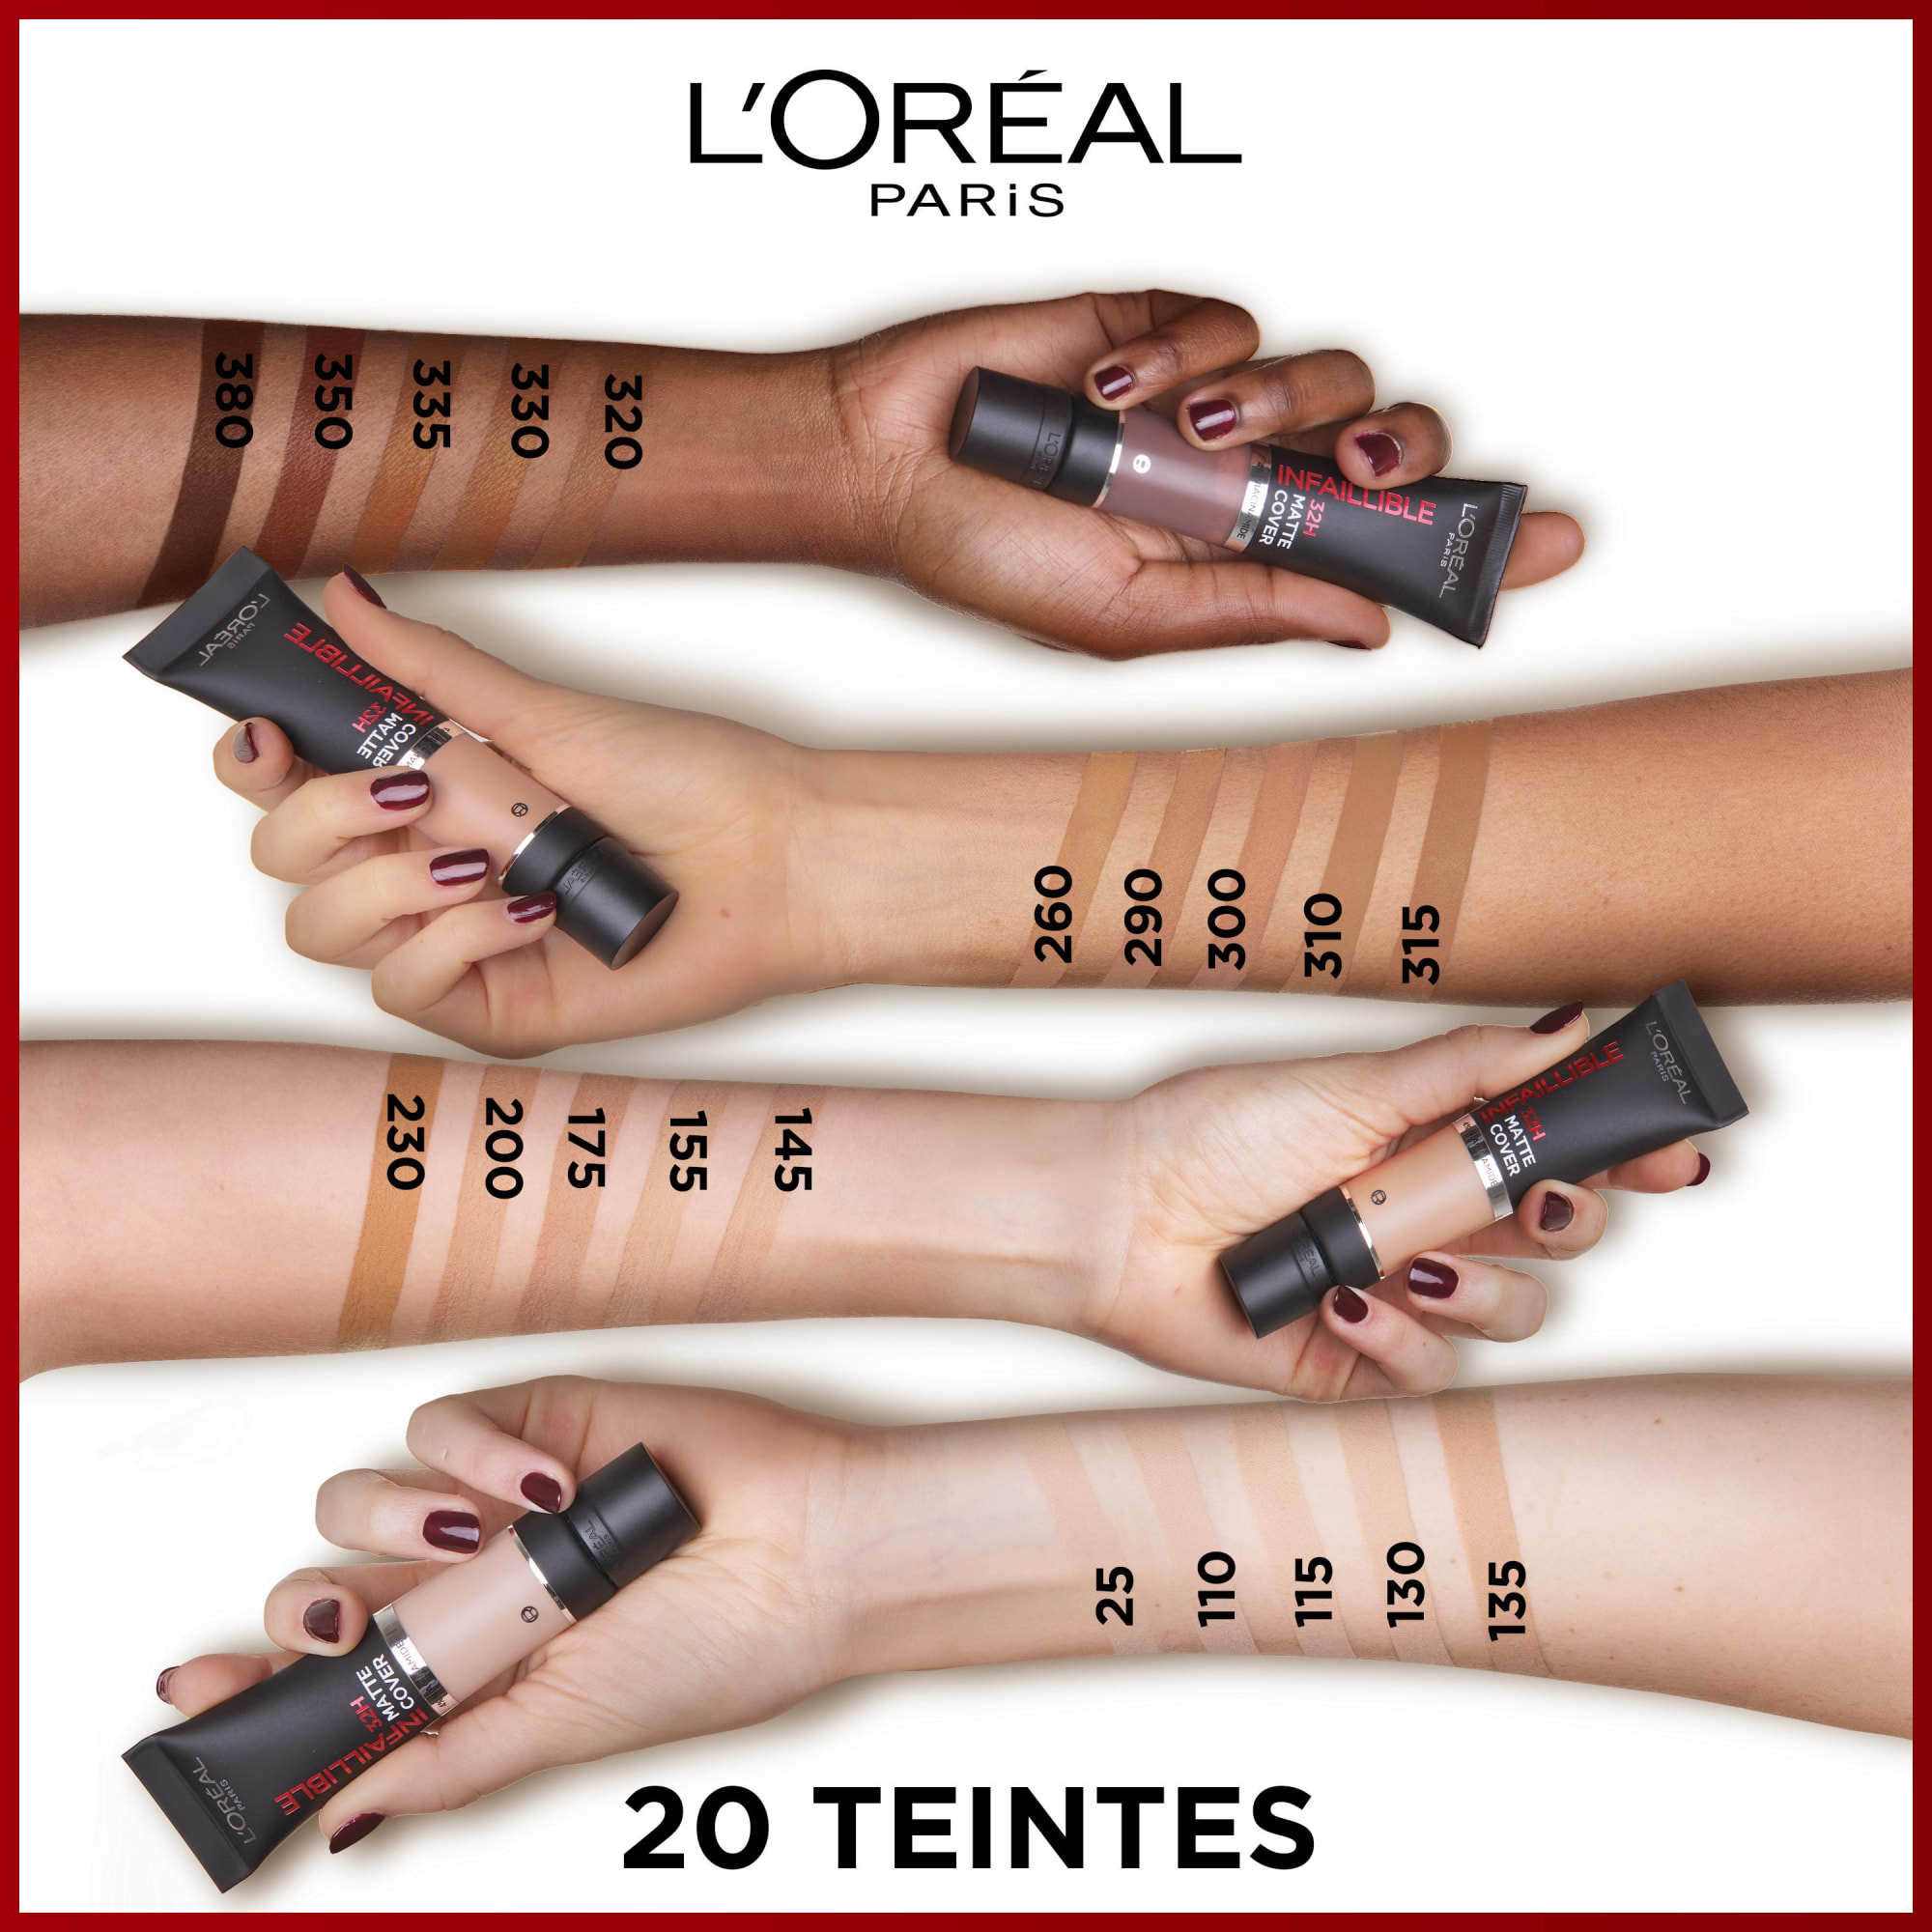 L'Oréal Paris Infaillible 32H Matte Cover Fond de teint 290 Sous-Ton Neutre